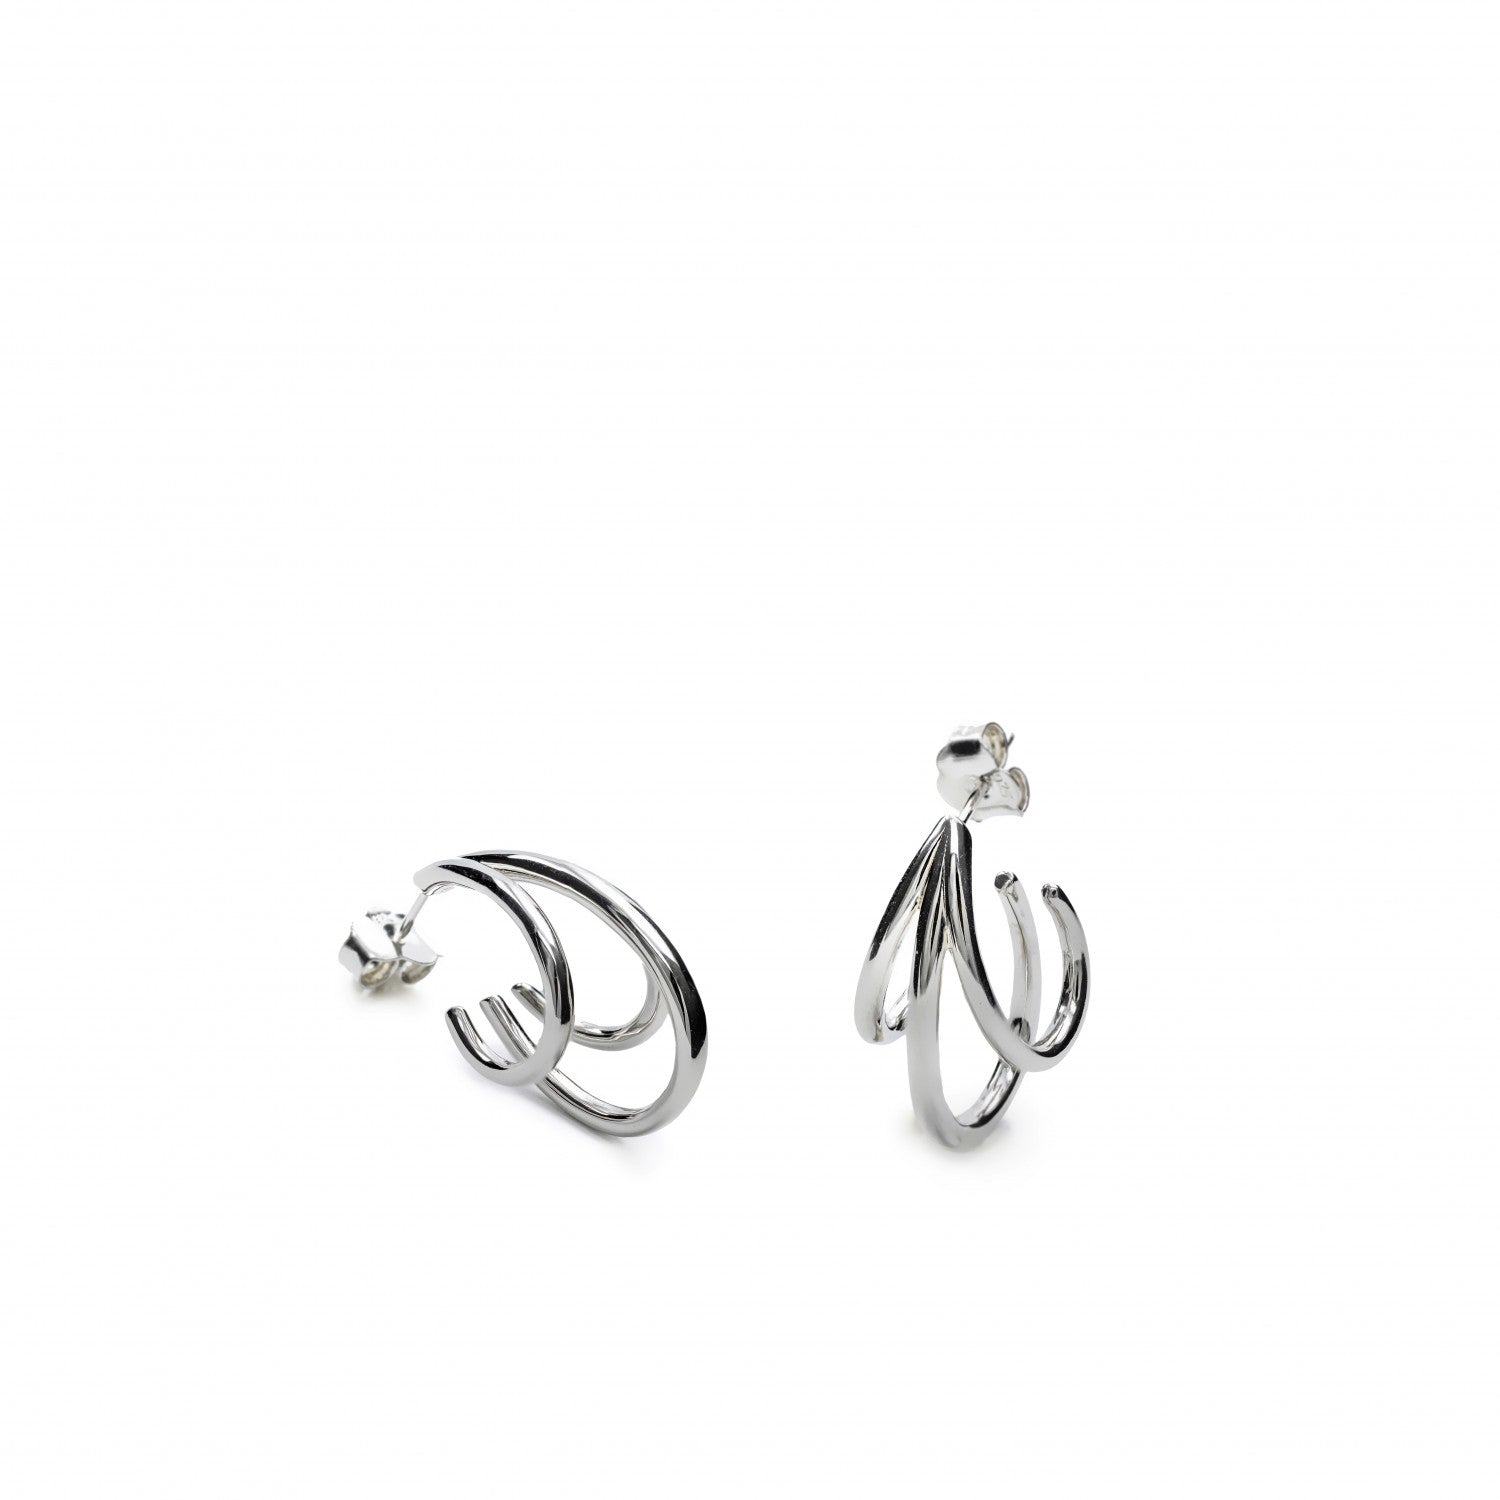 Original earrings triple hoop earrings semi-open hoop design